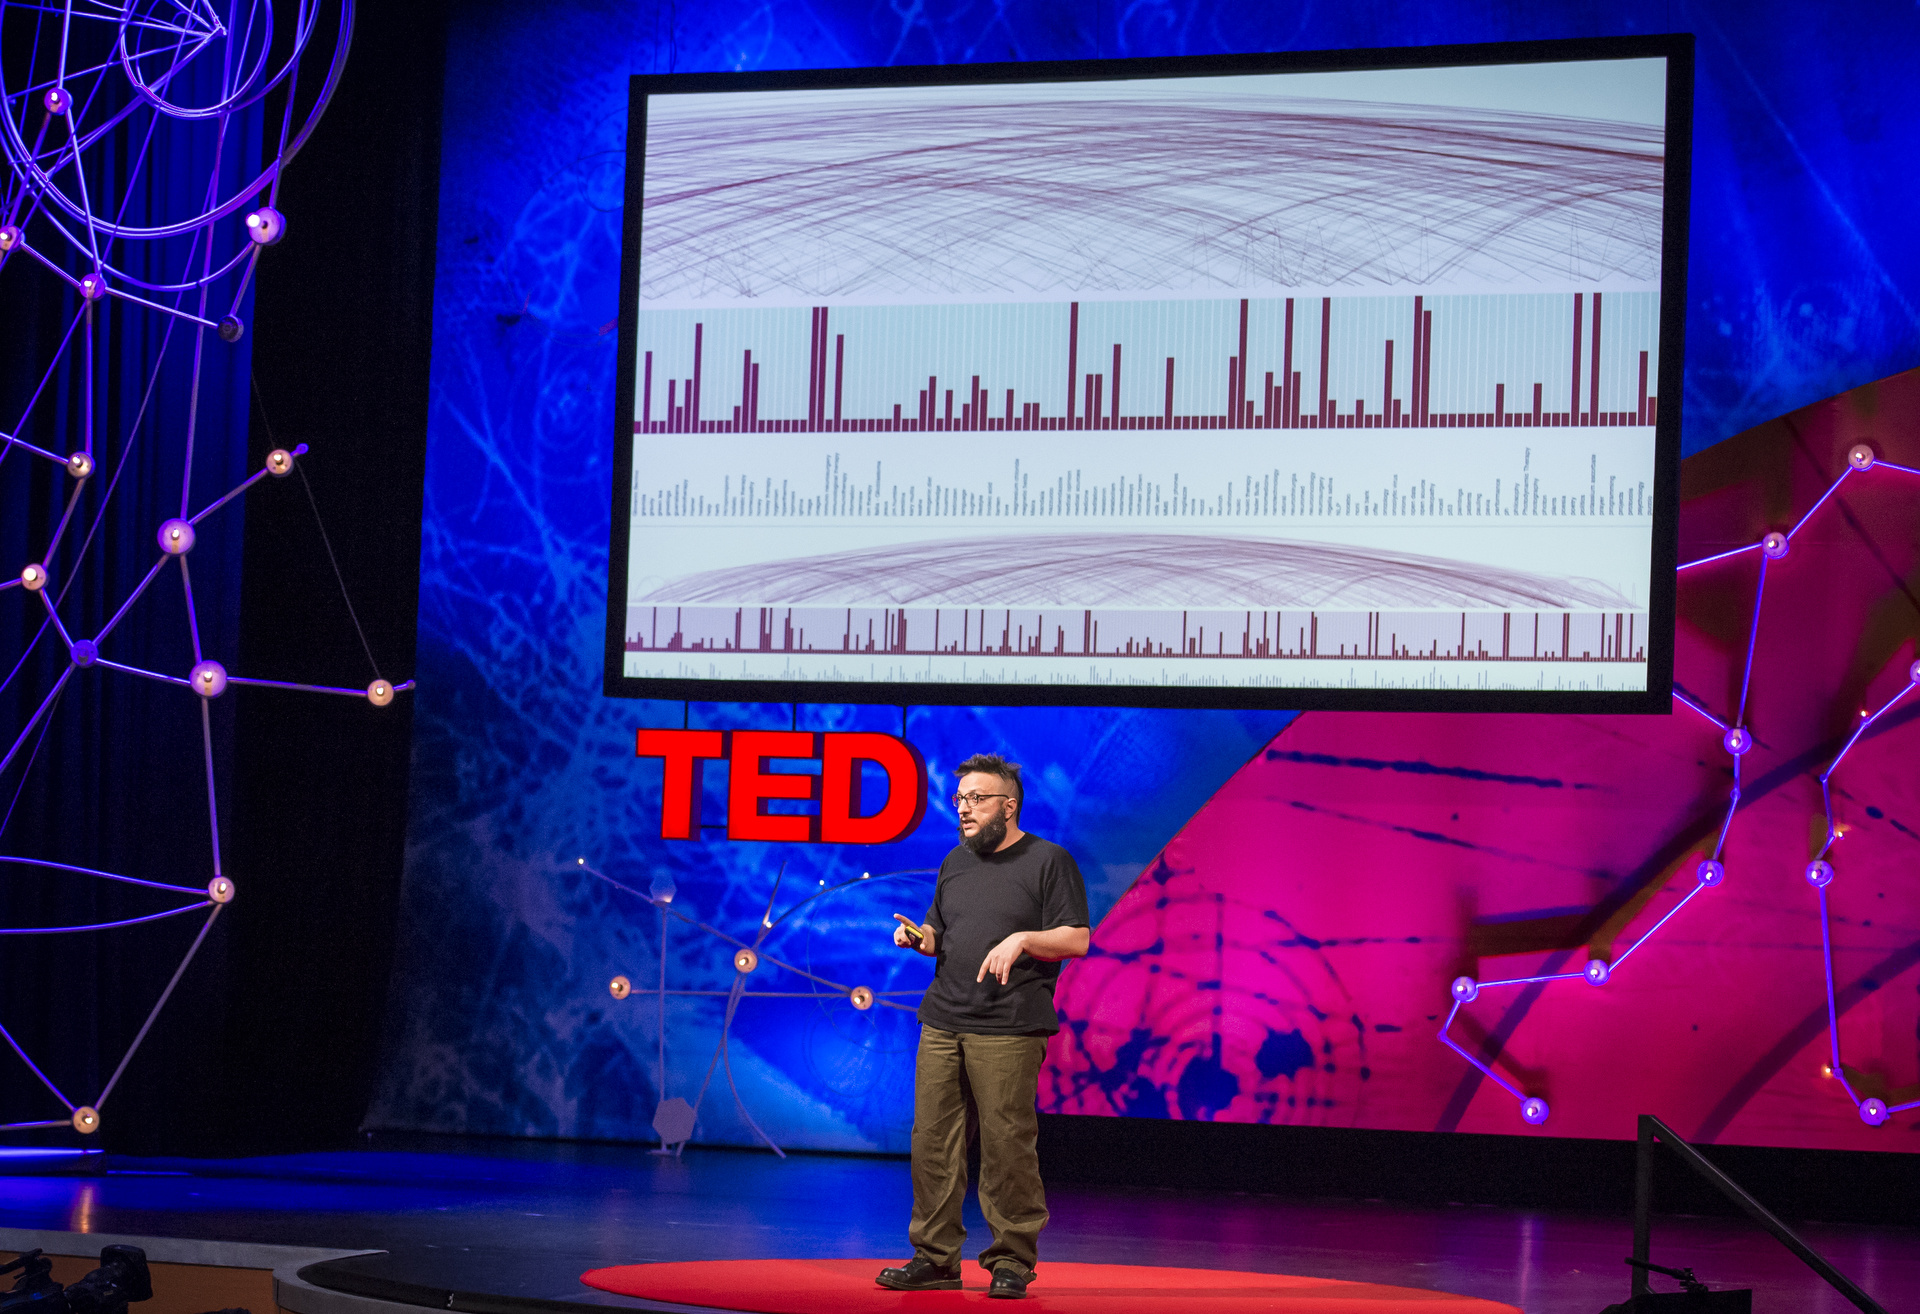 La Cura: Salvatore Iaconesi at TED Global 2013 in Edinburgh